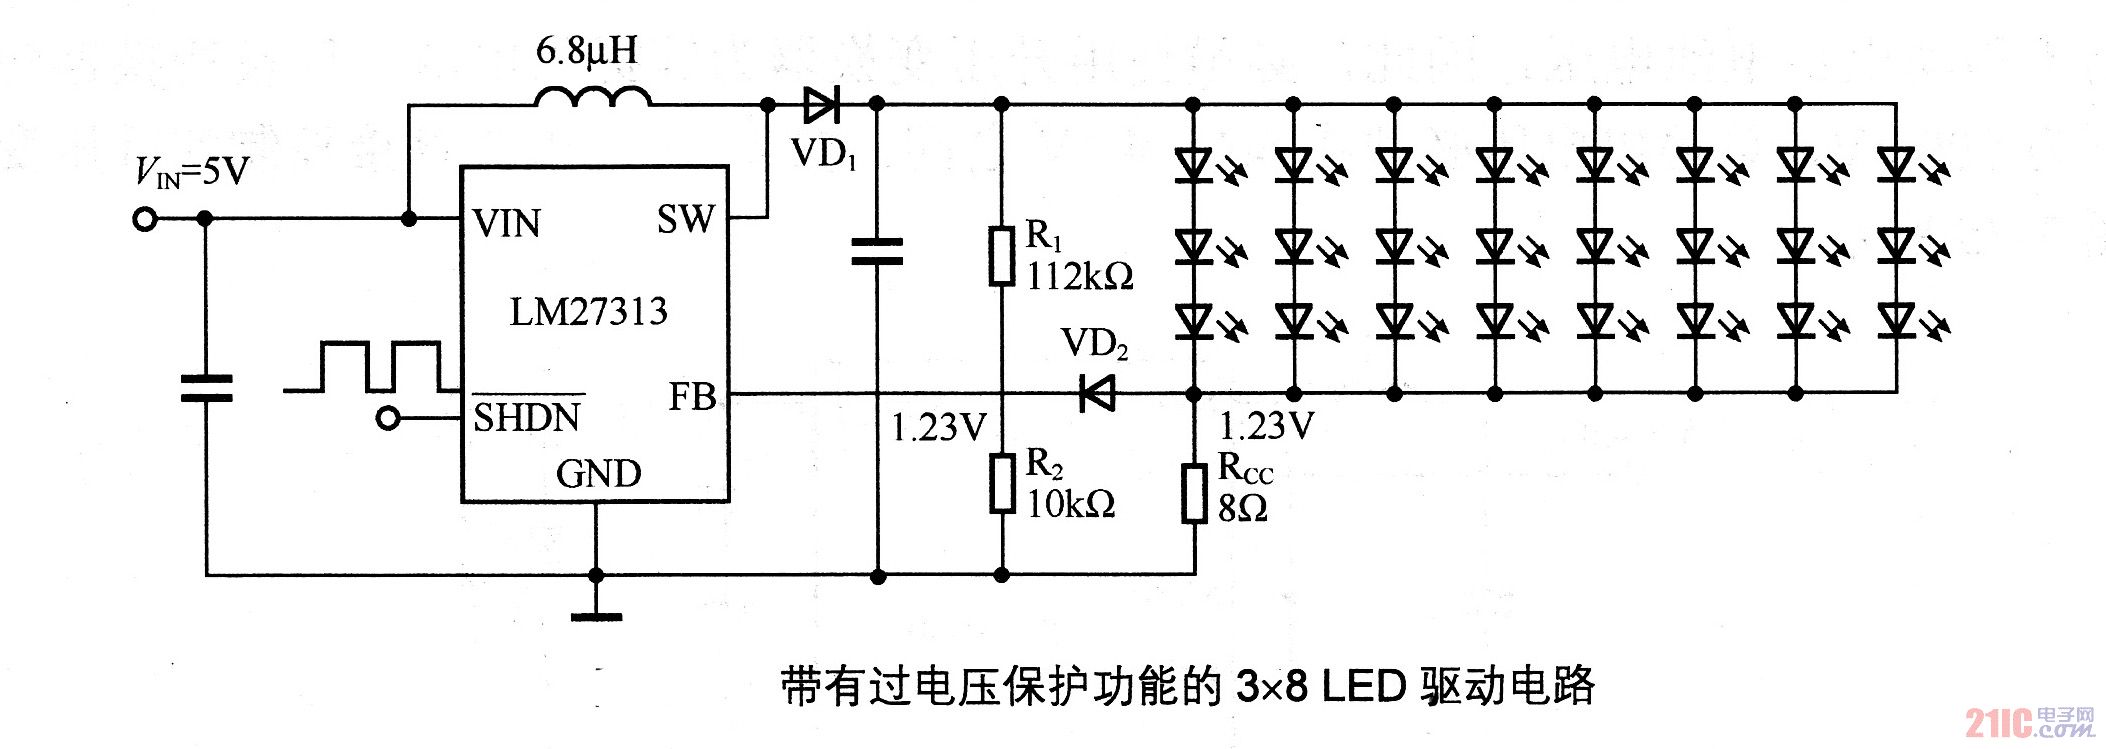 带有过电压保护功能的3×8LED驱动电路图-LED照明电路